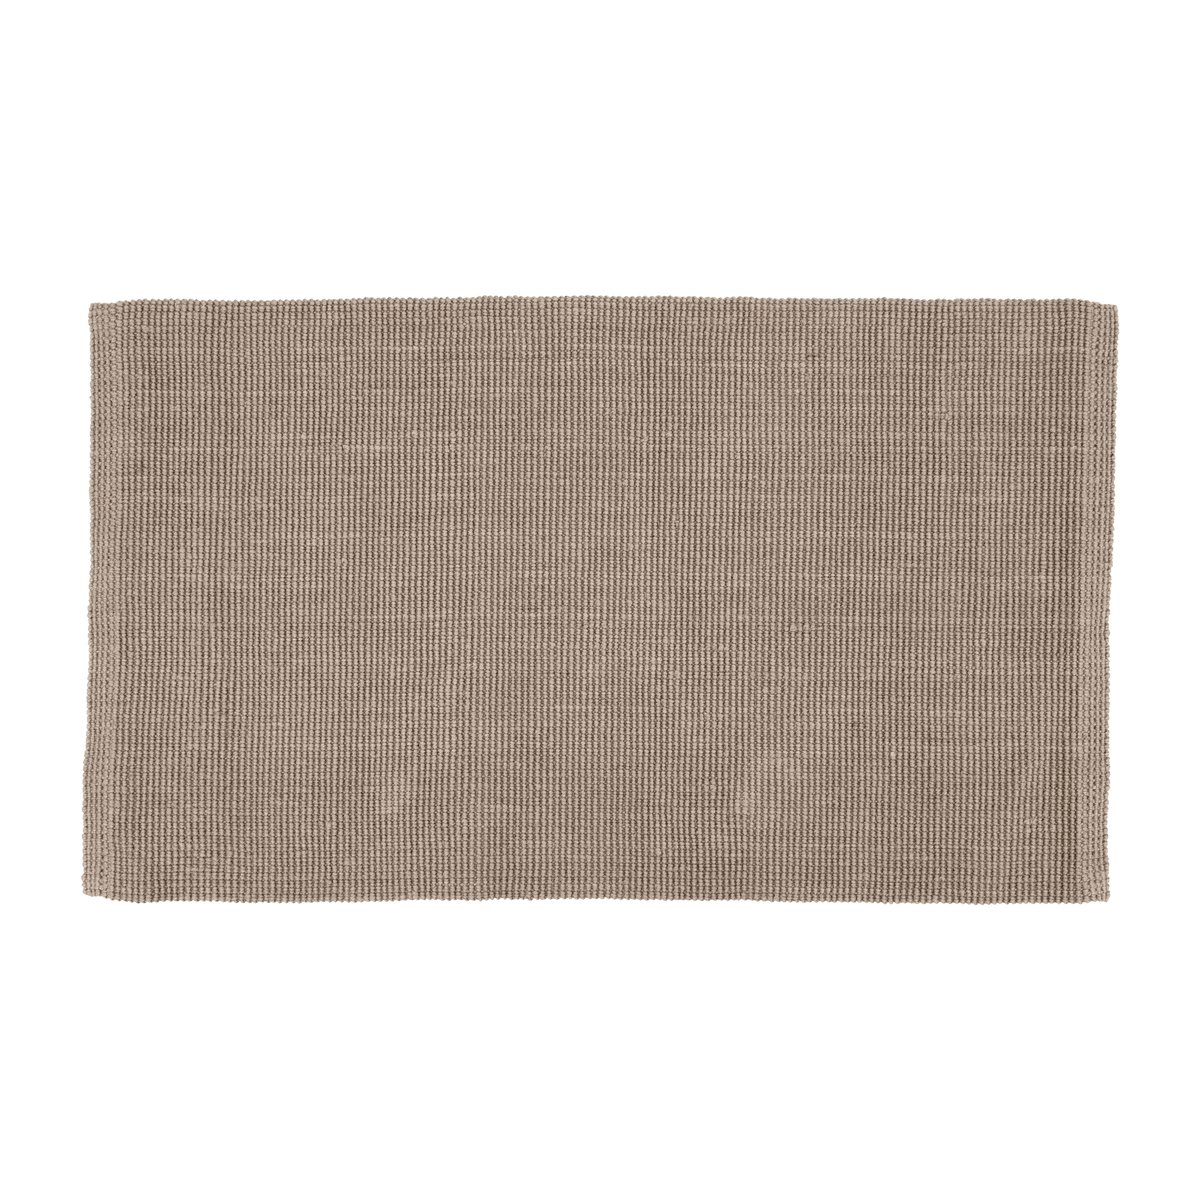 Dixie Fiona jutetæppe grå 70×120 cm